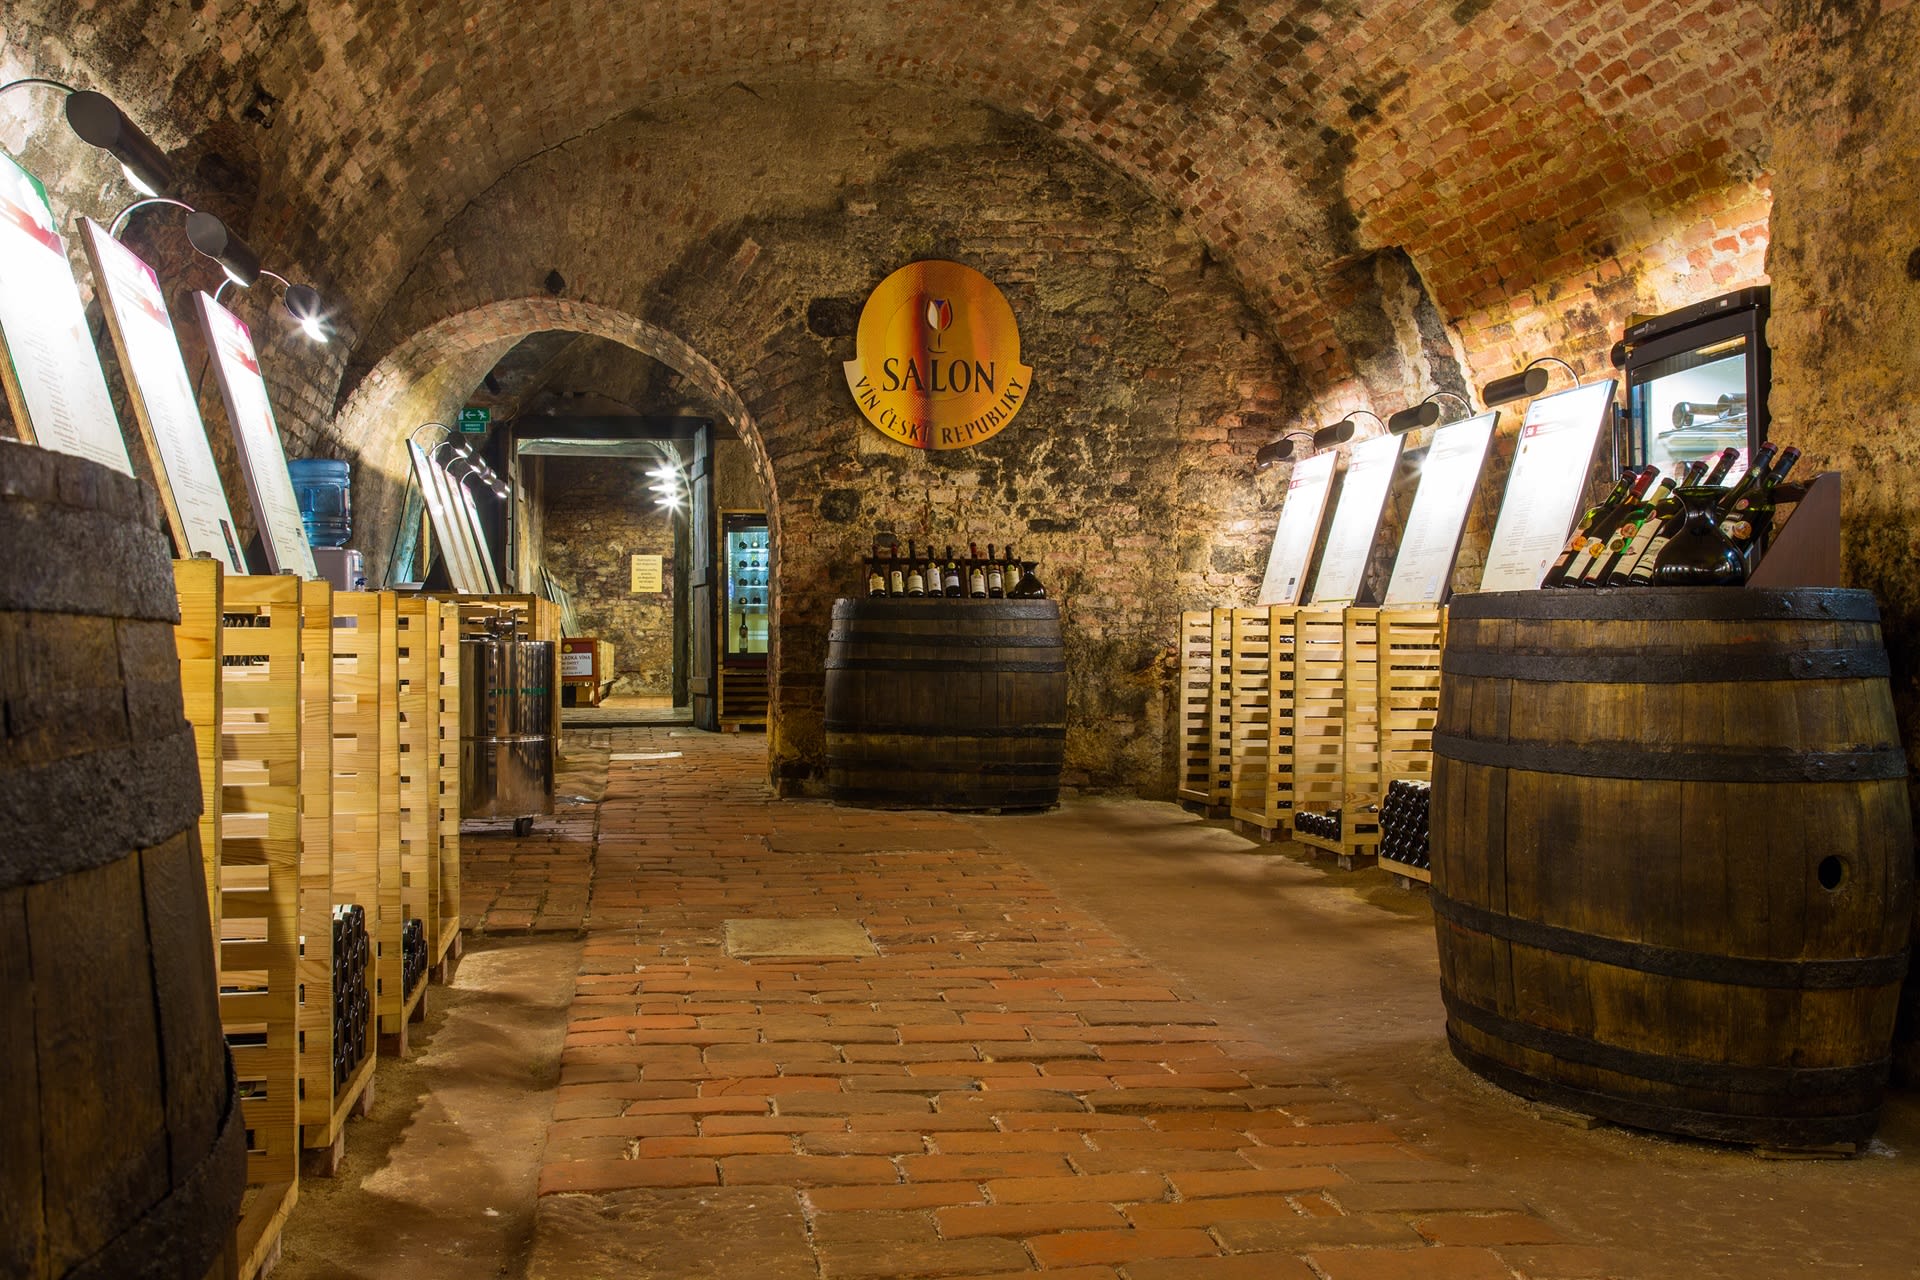 Salon vín ve valtickém podzemí má neopakovatelnou atmosféru